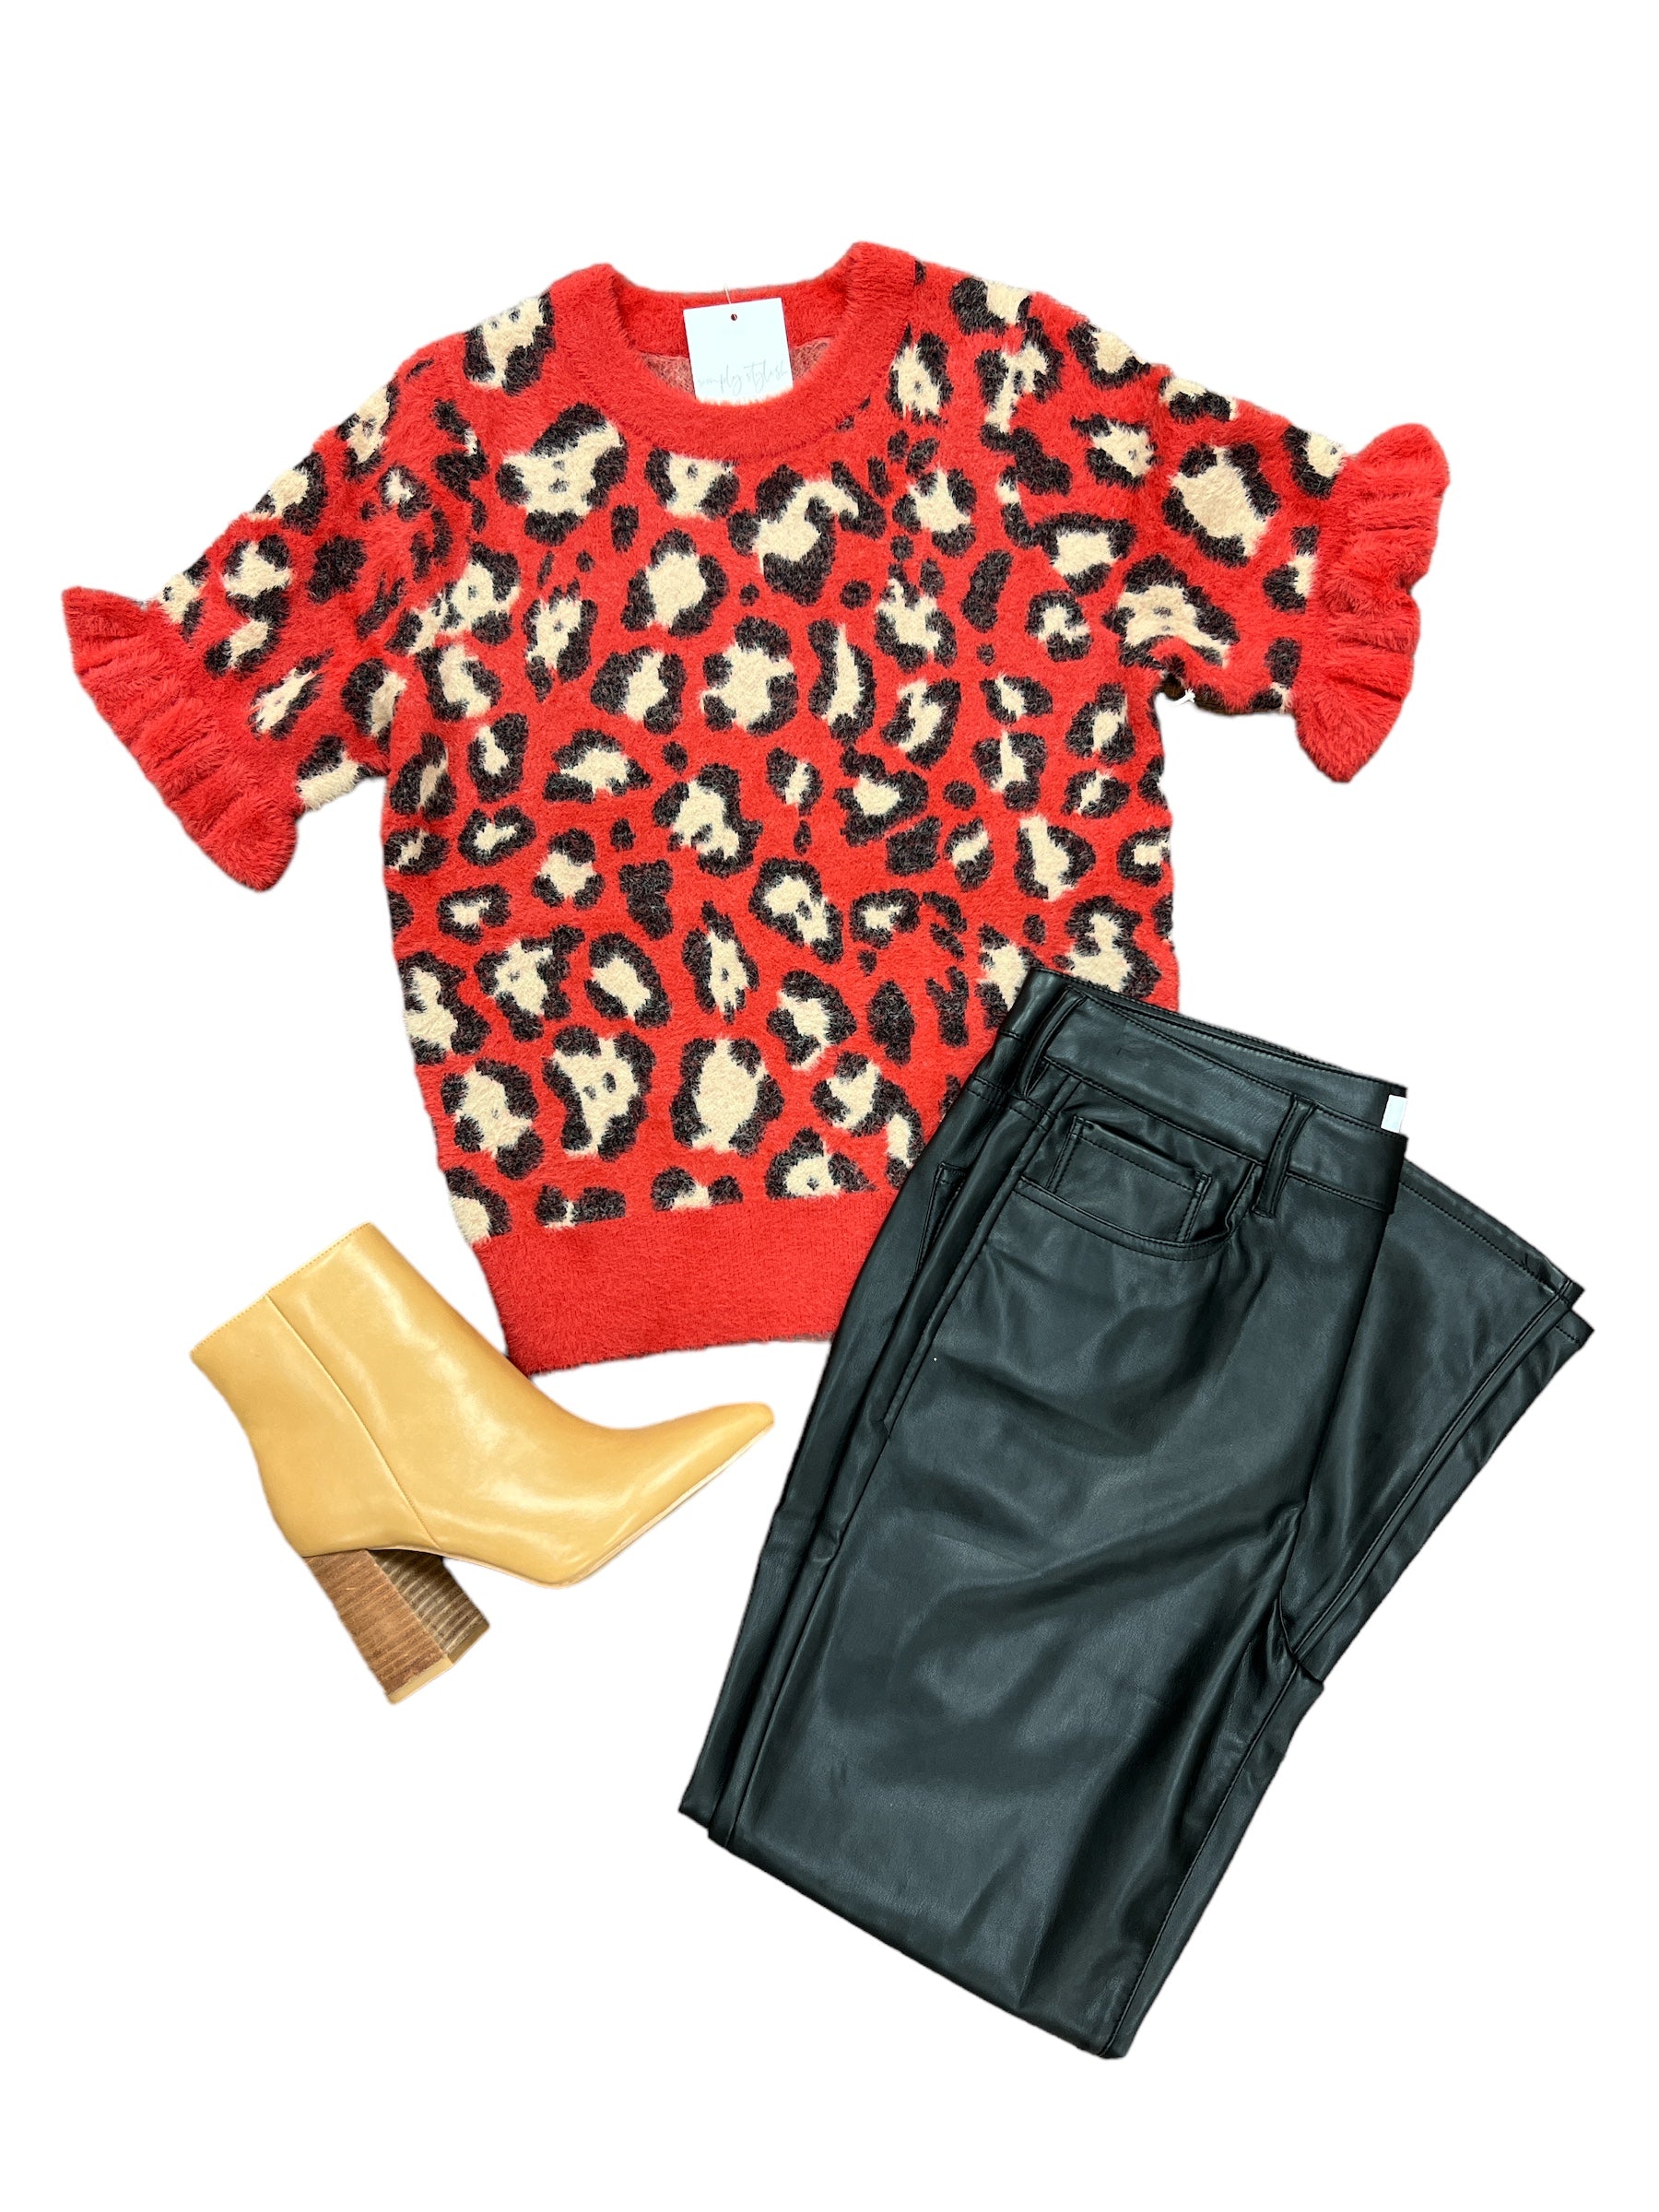 Sezanna Sweater-140 Sweaters, Cardigans & Sweatshirts-Simply Stylish Boutique-Simply Stylish Boutique | Women’s & Kid’s Fashion | Paducah, KY